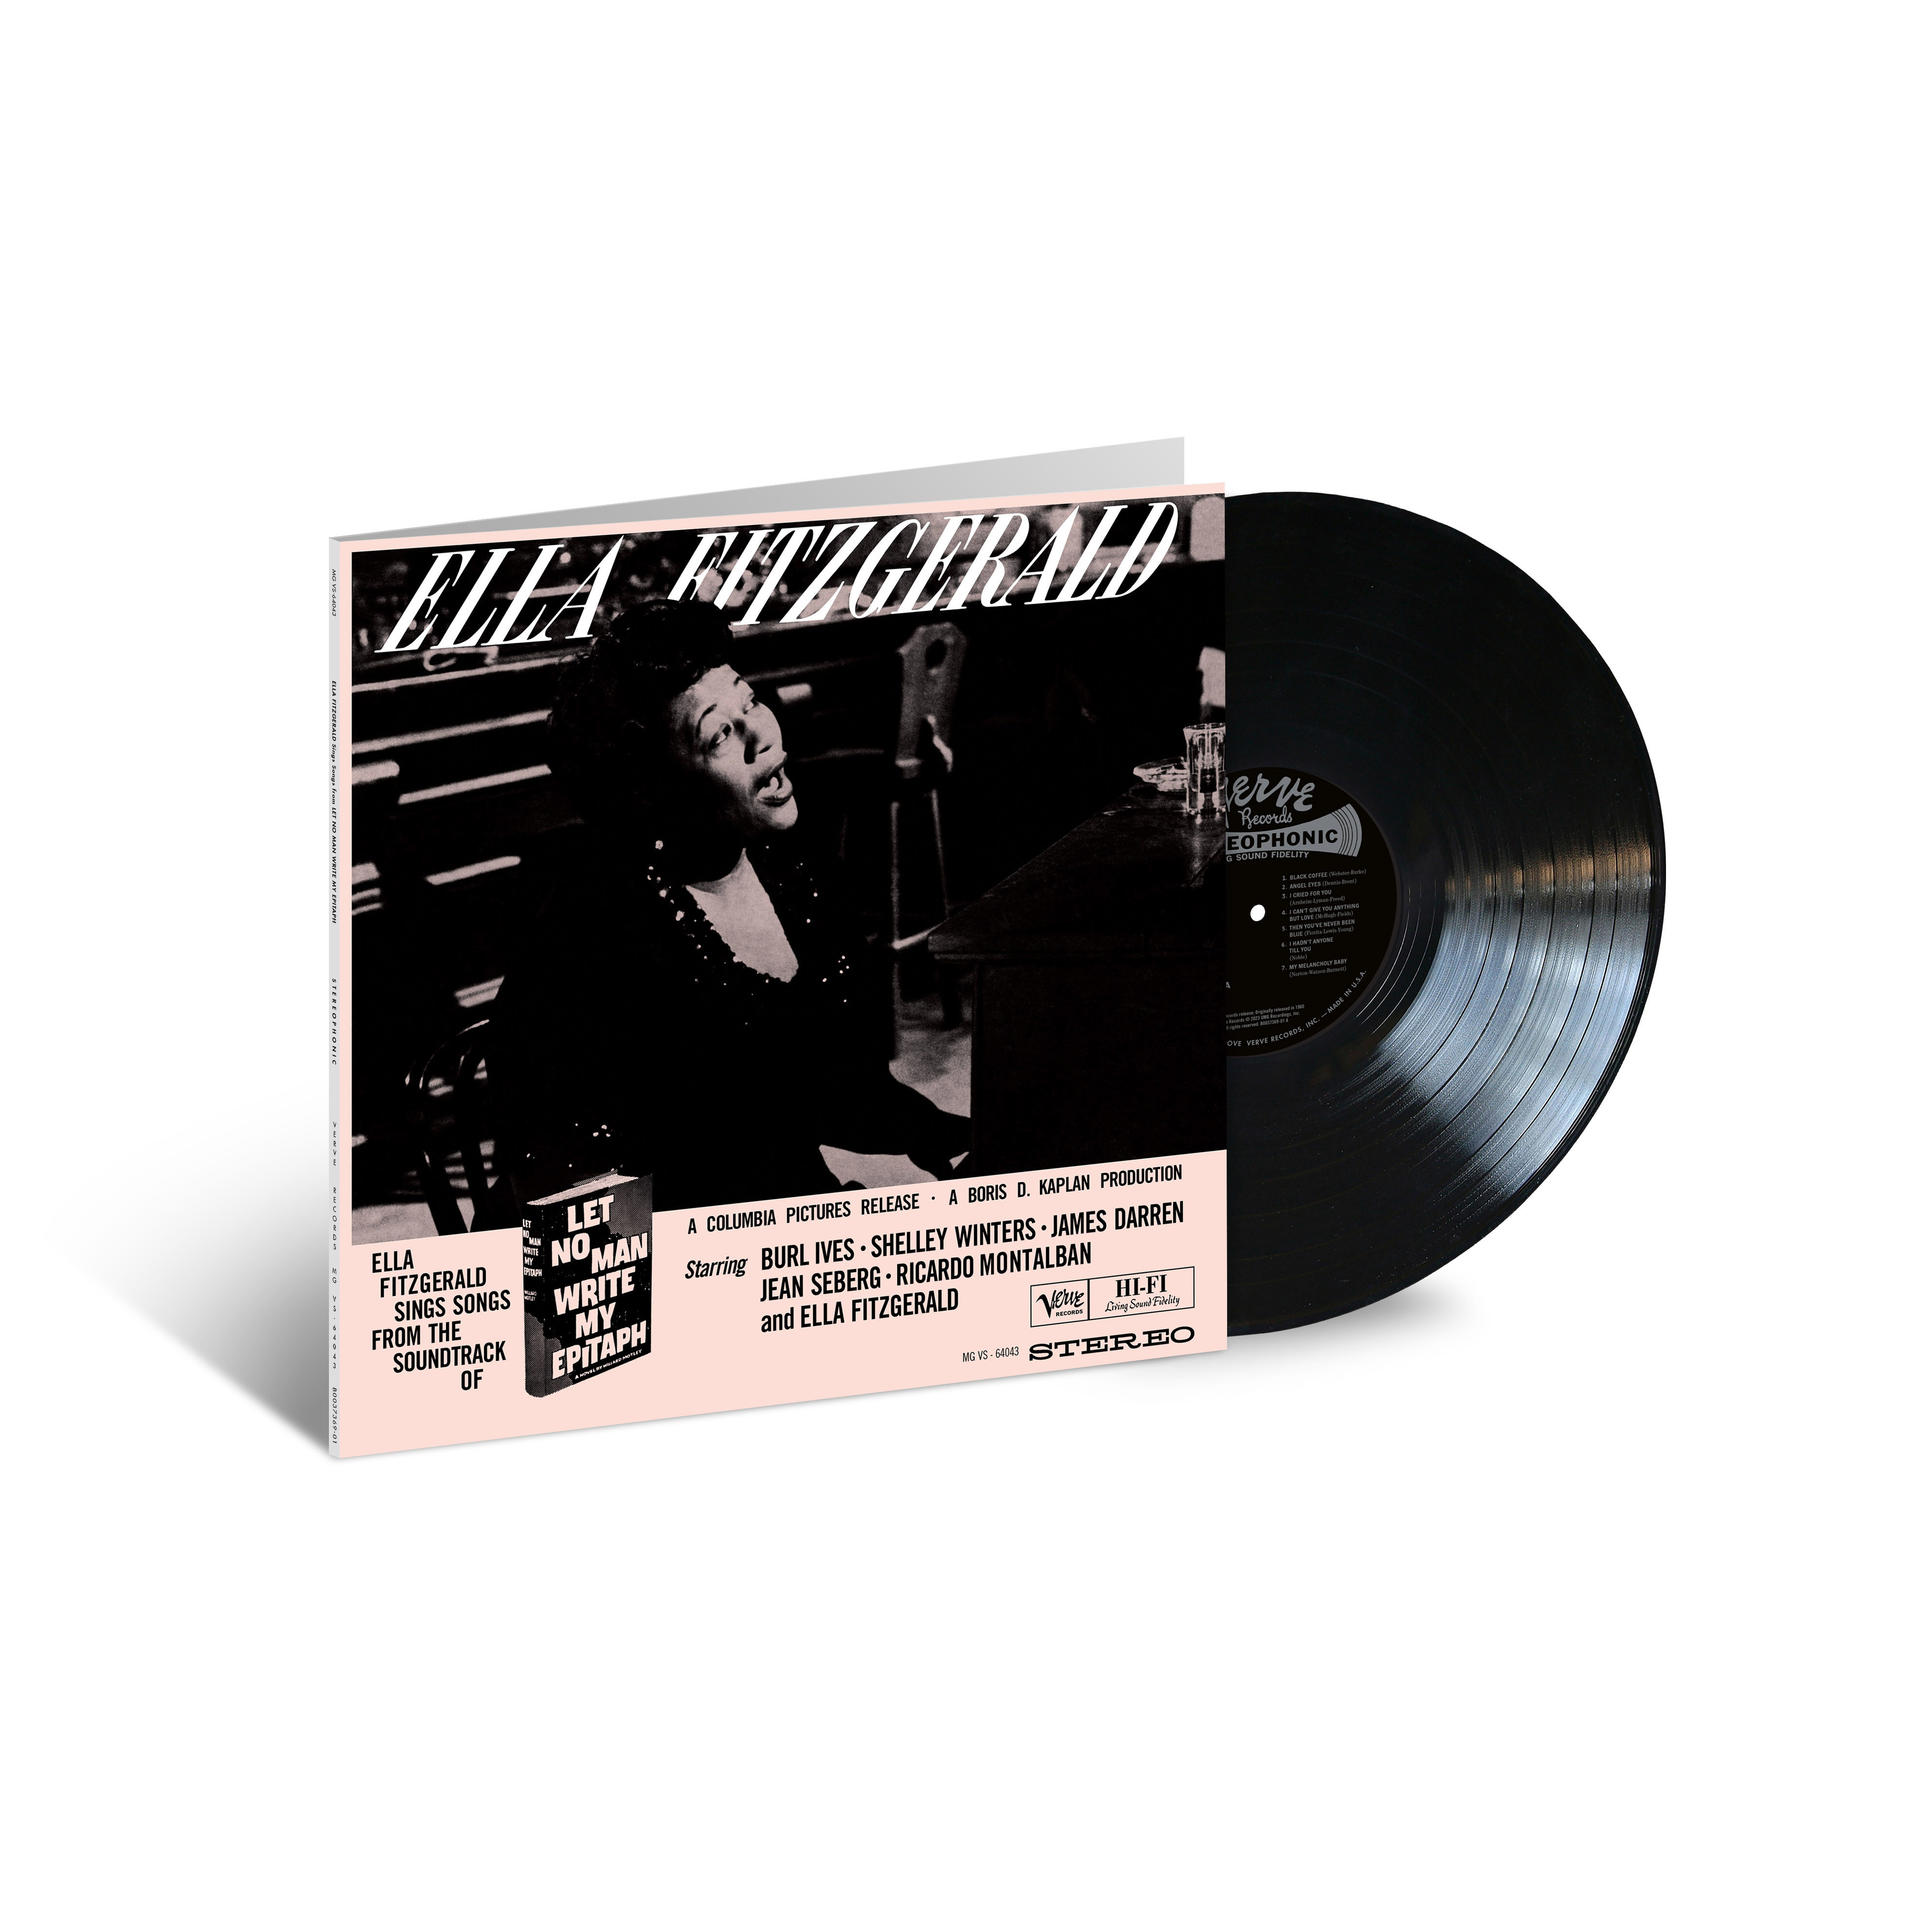 Ella Fitzgerald - Let no Sounds) Write - Epitaph (Vinyl) (Acoustic My man